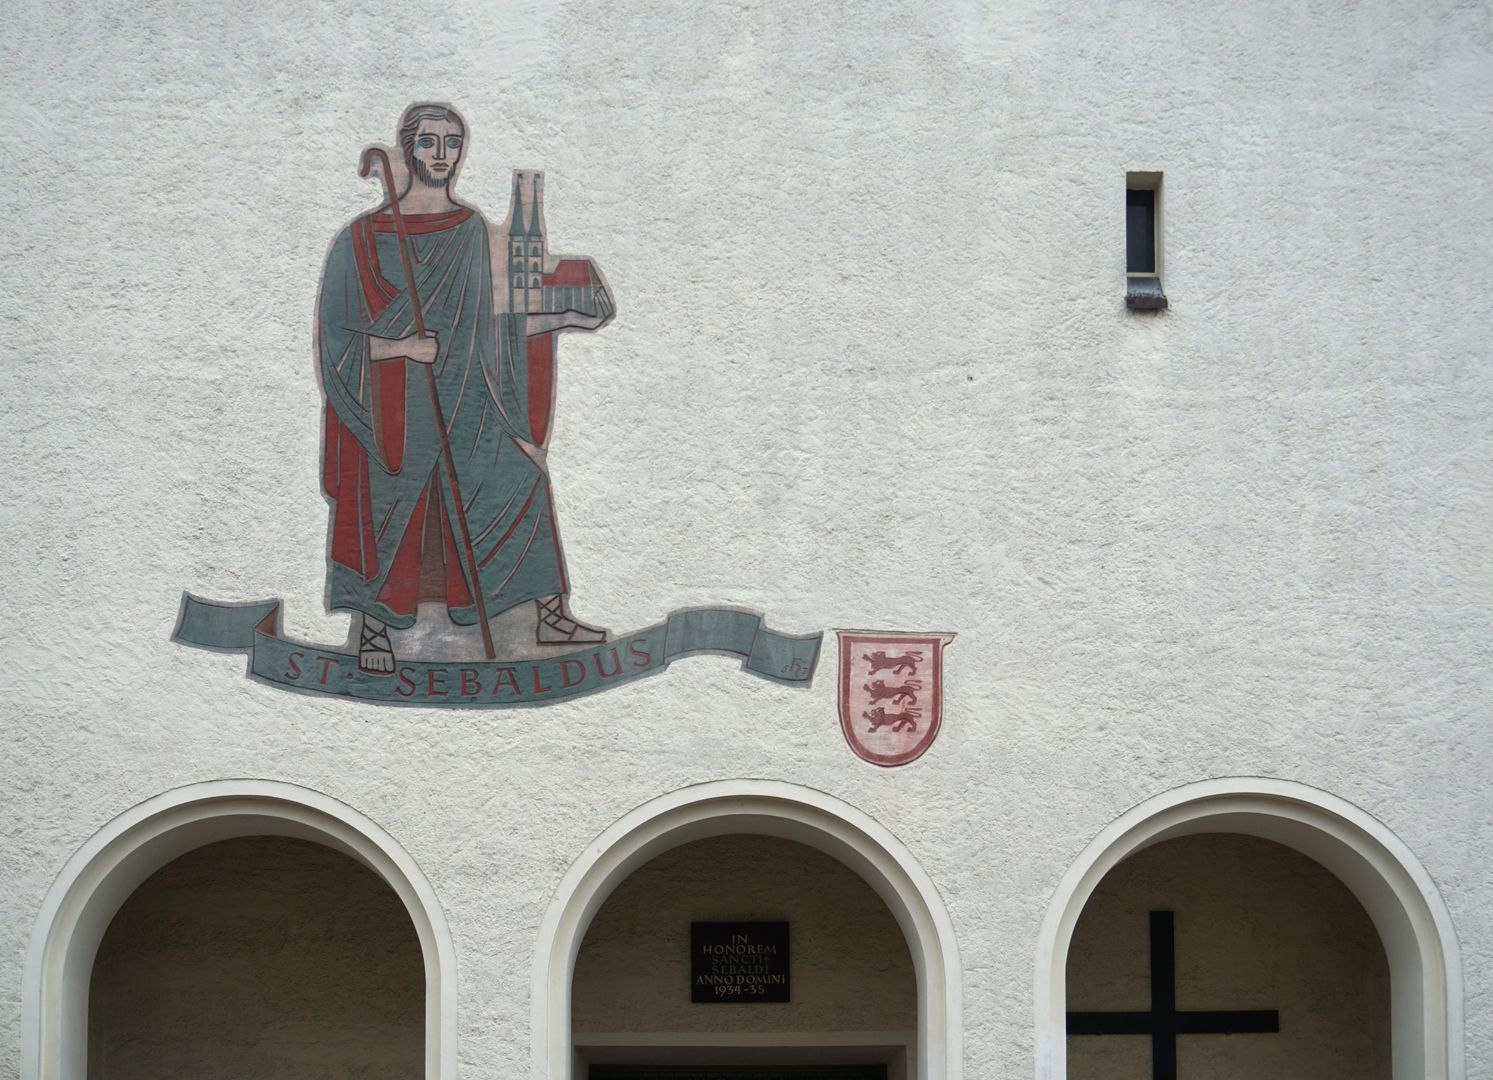 St. Sebald Sgraffito on the facade